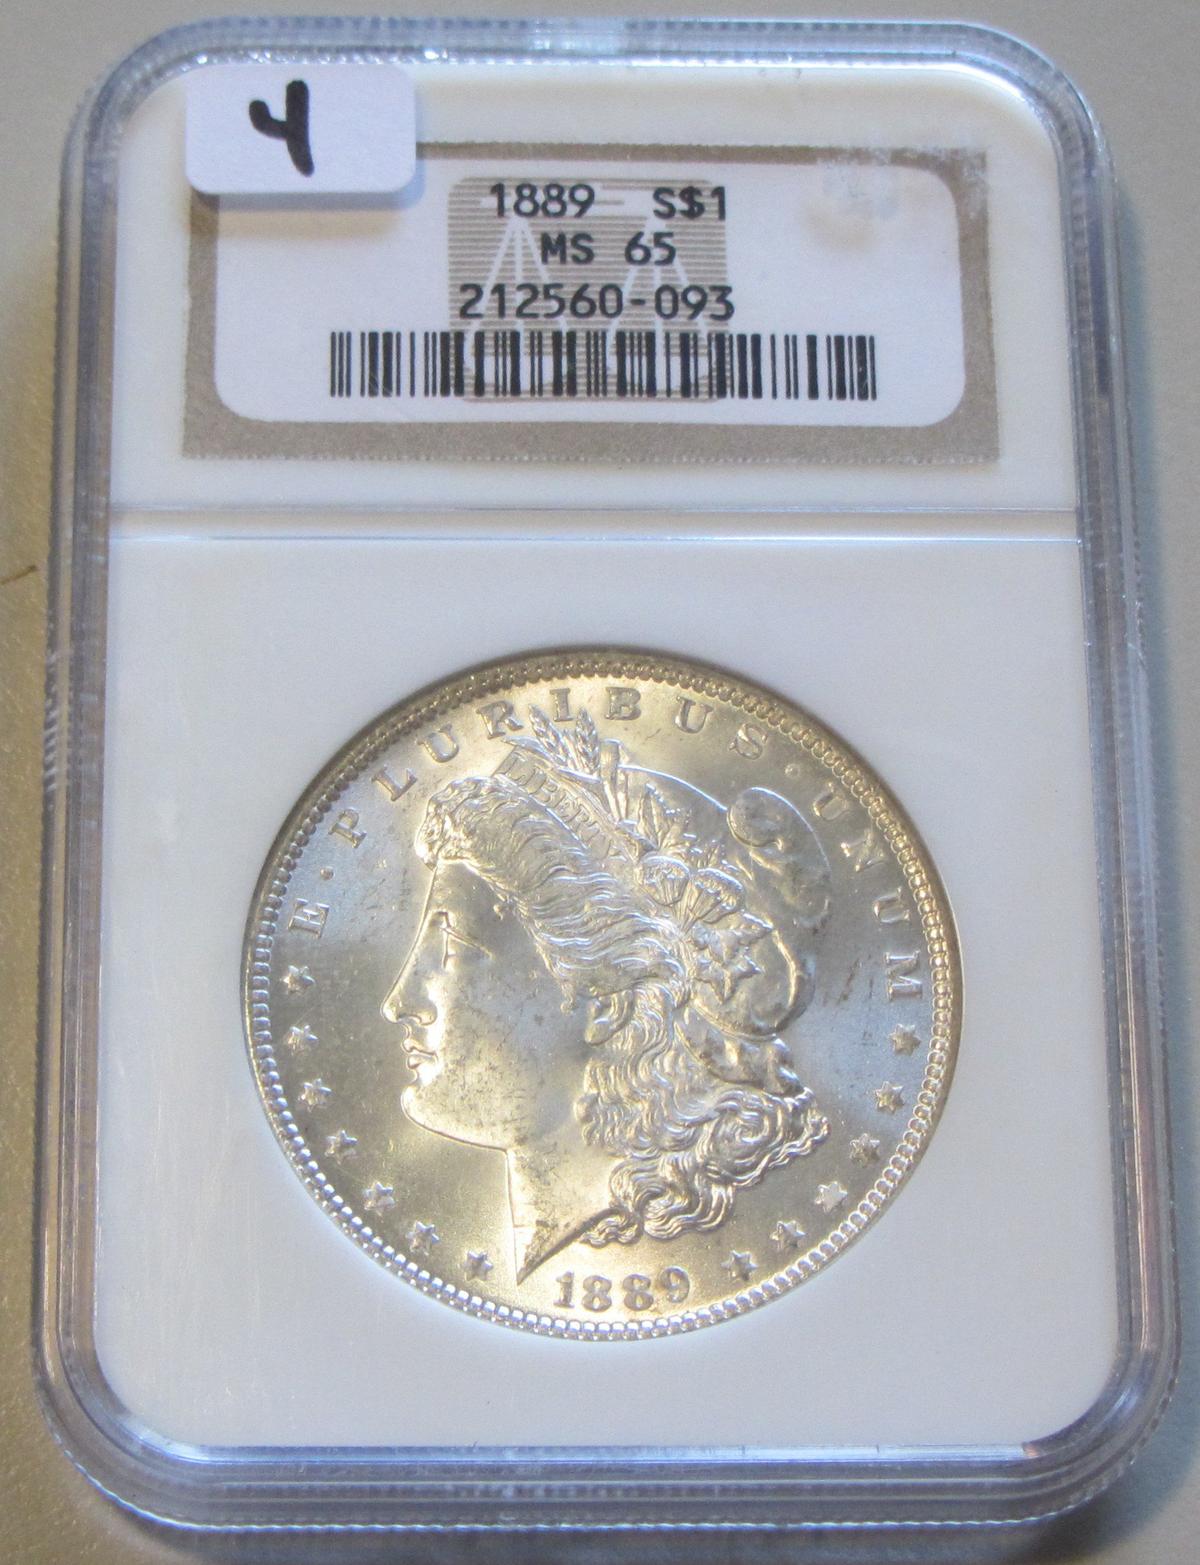 $1 1889 MORGAN GEM NGC MS 65